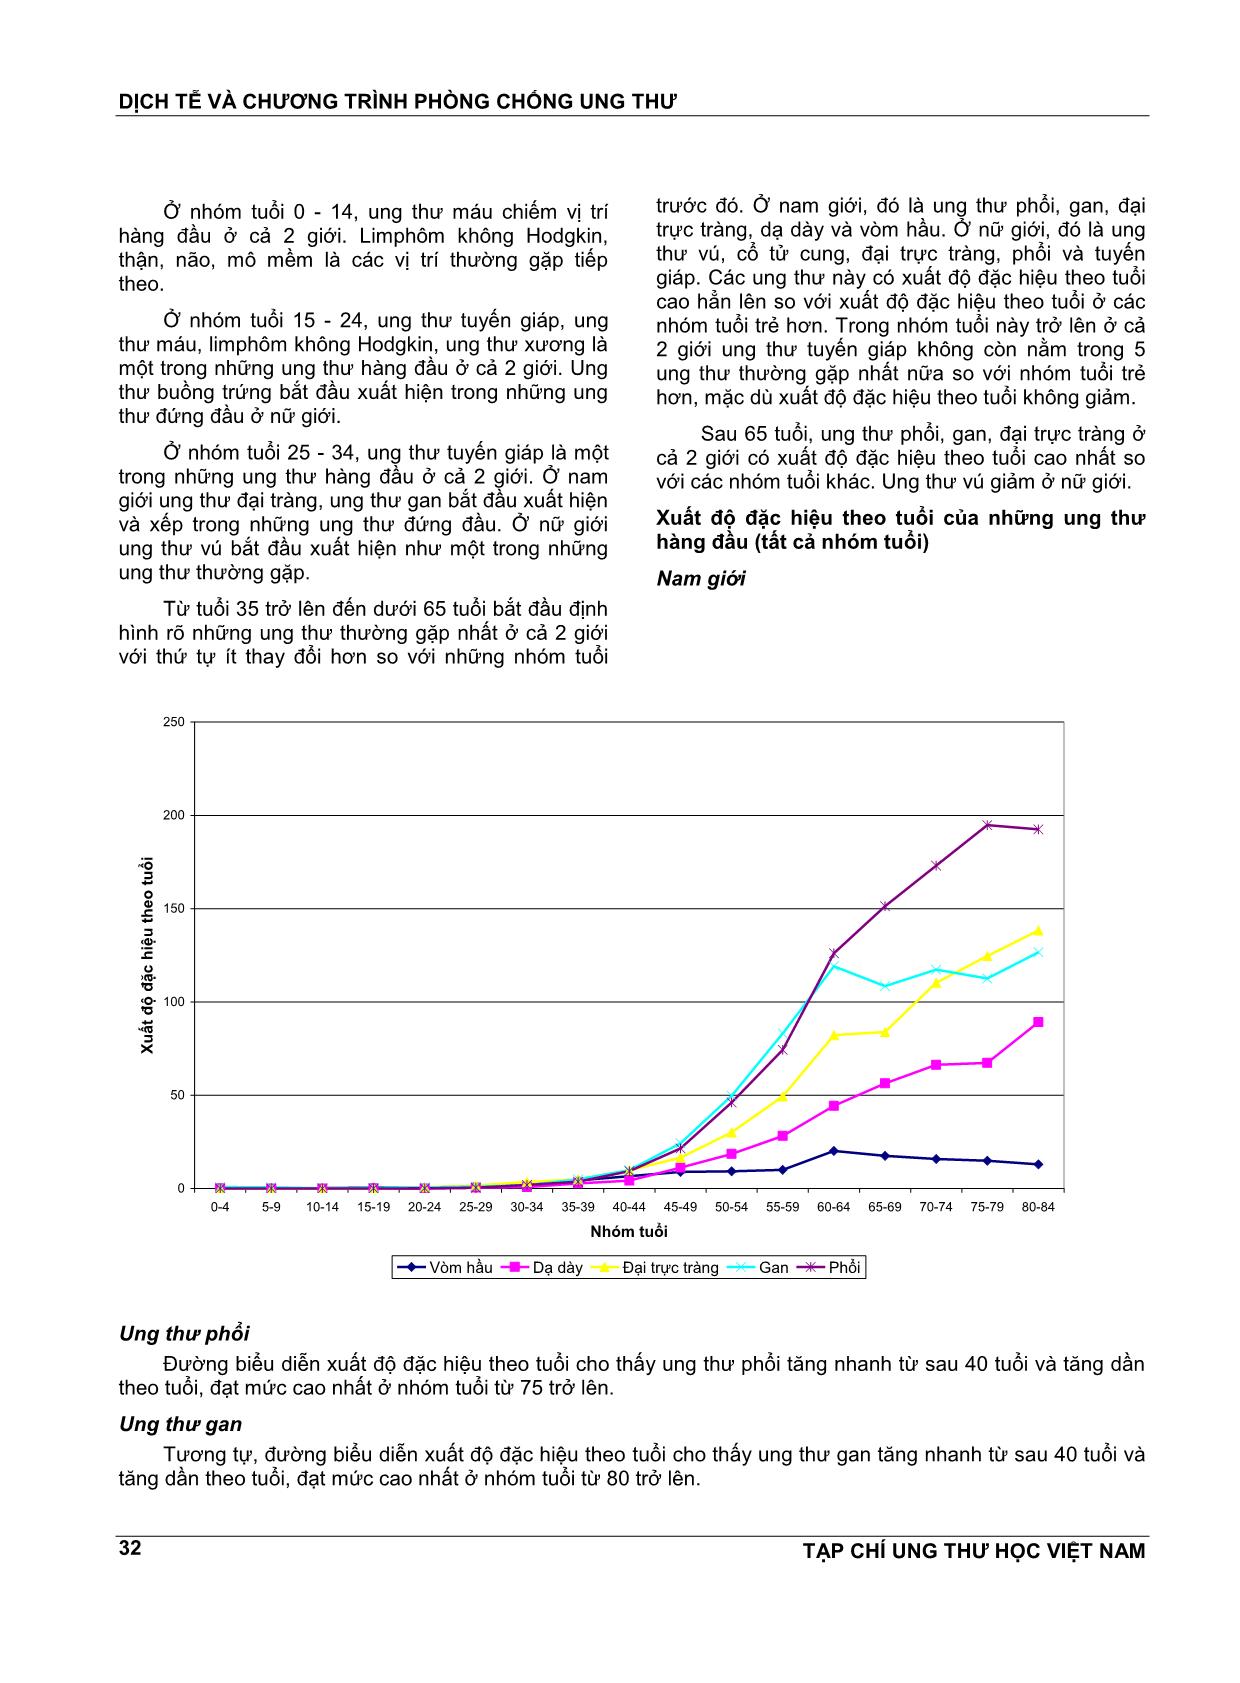 Kết quả ghi nhận ung thư quần thể thành phố Hồ Chí Minh 1995 - 2014 trang 7